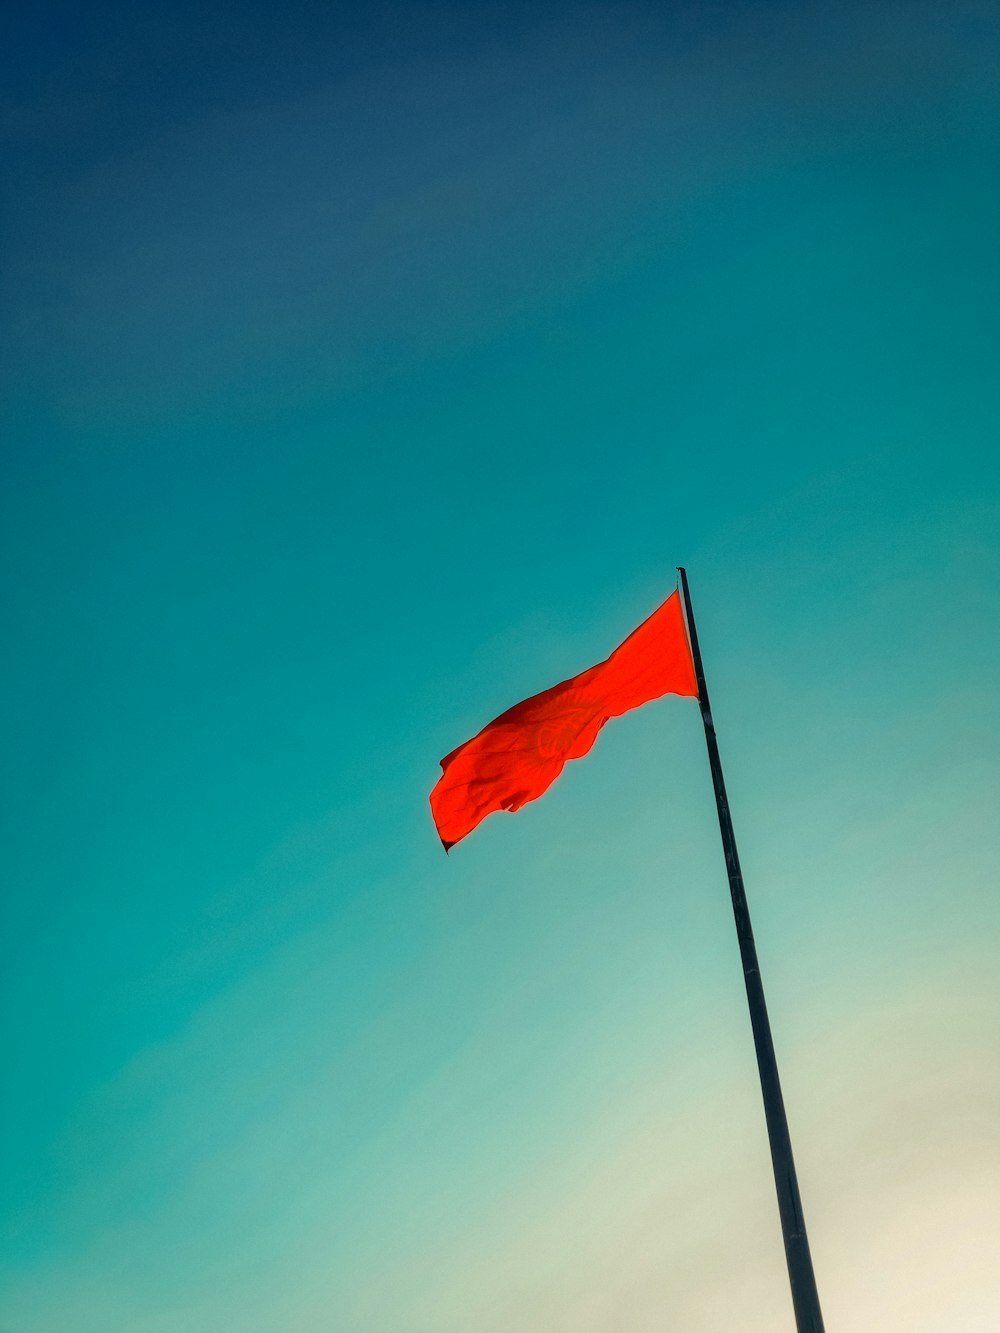 Eine rote Fahne weht hoch am Himmel